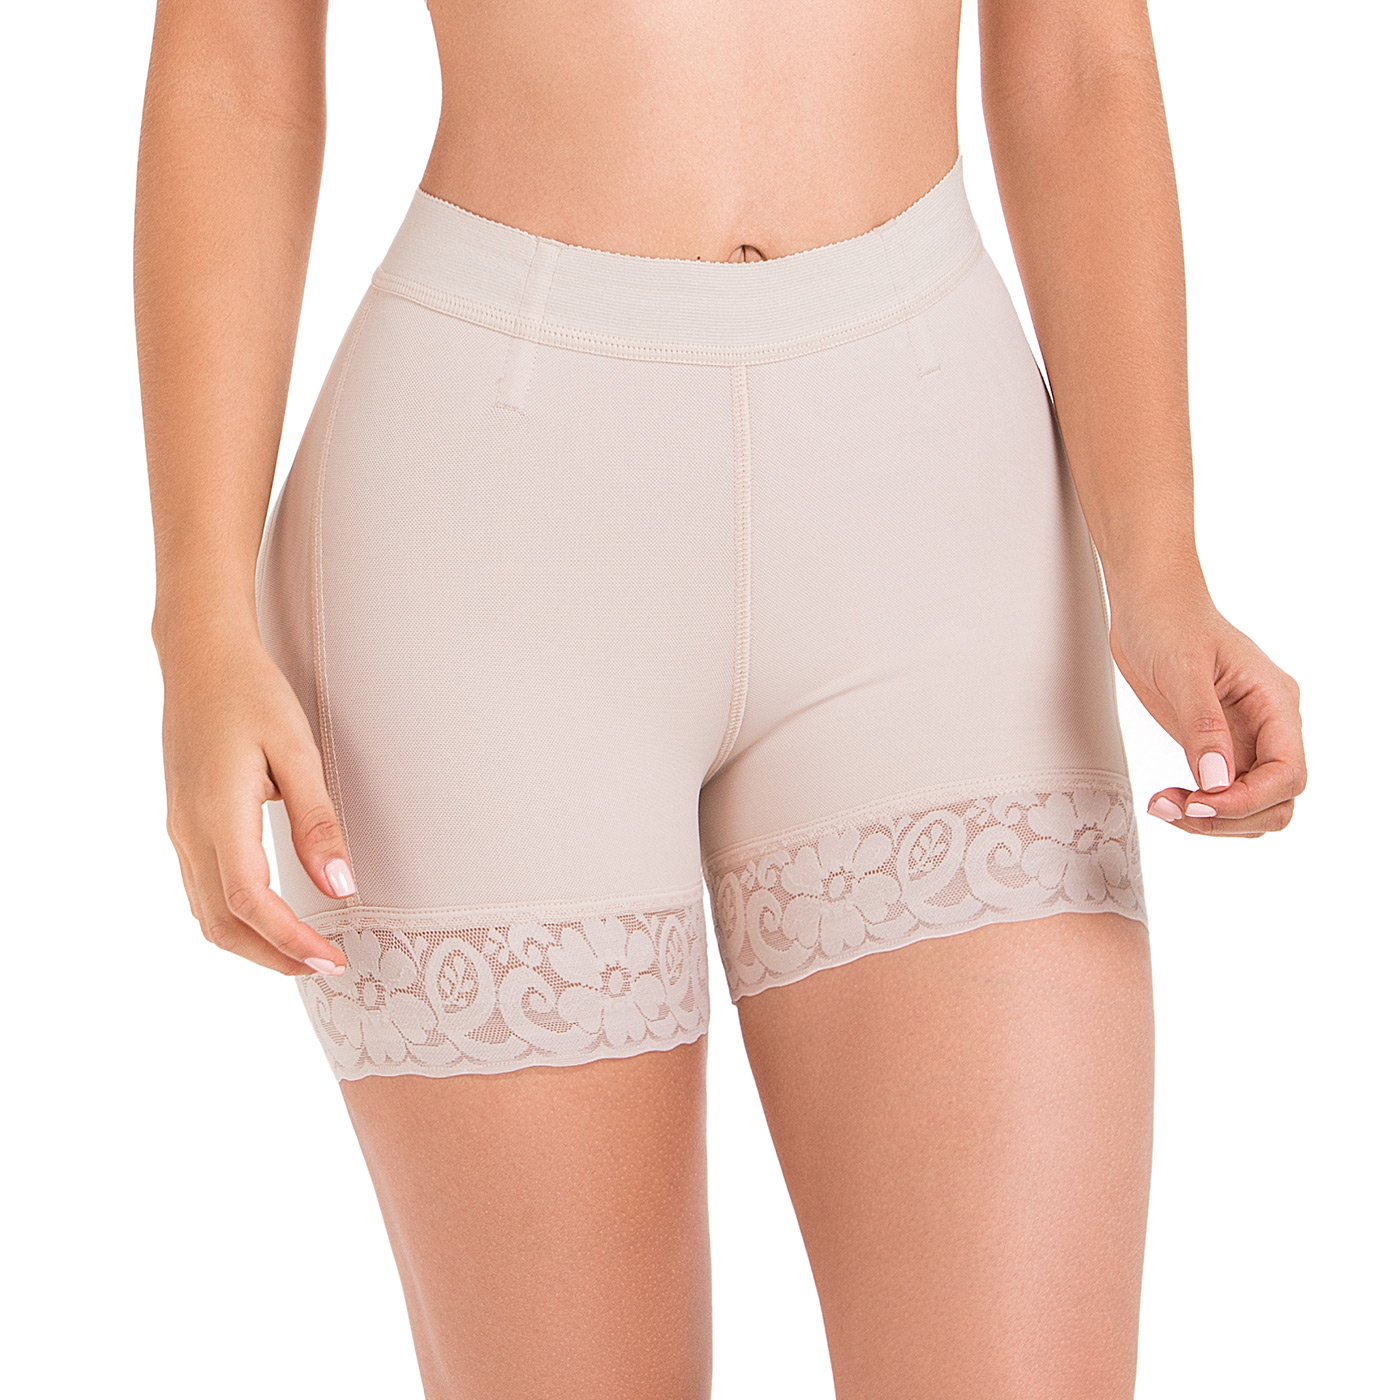 Natural Look Discreet Seamless Lace Hip & Butt Enhancer Underwear Shapewear  -USA